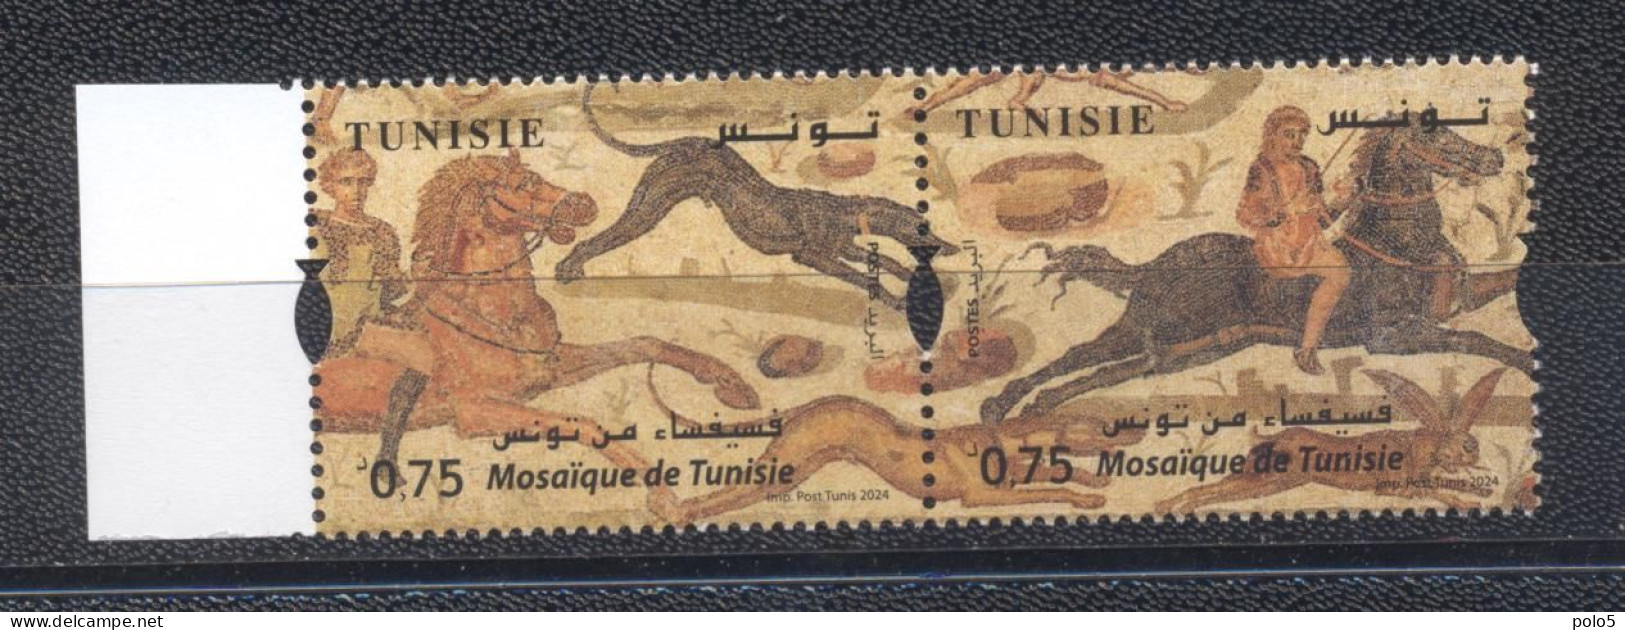 Tunisie 2024- Mosaique De Tunisie Paire - Tunisia